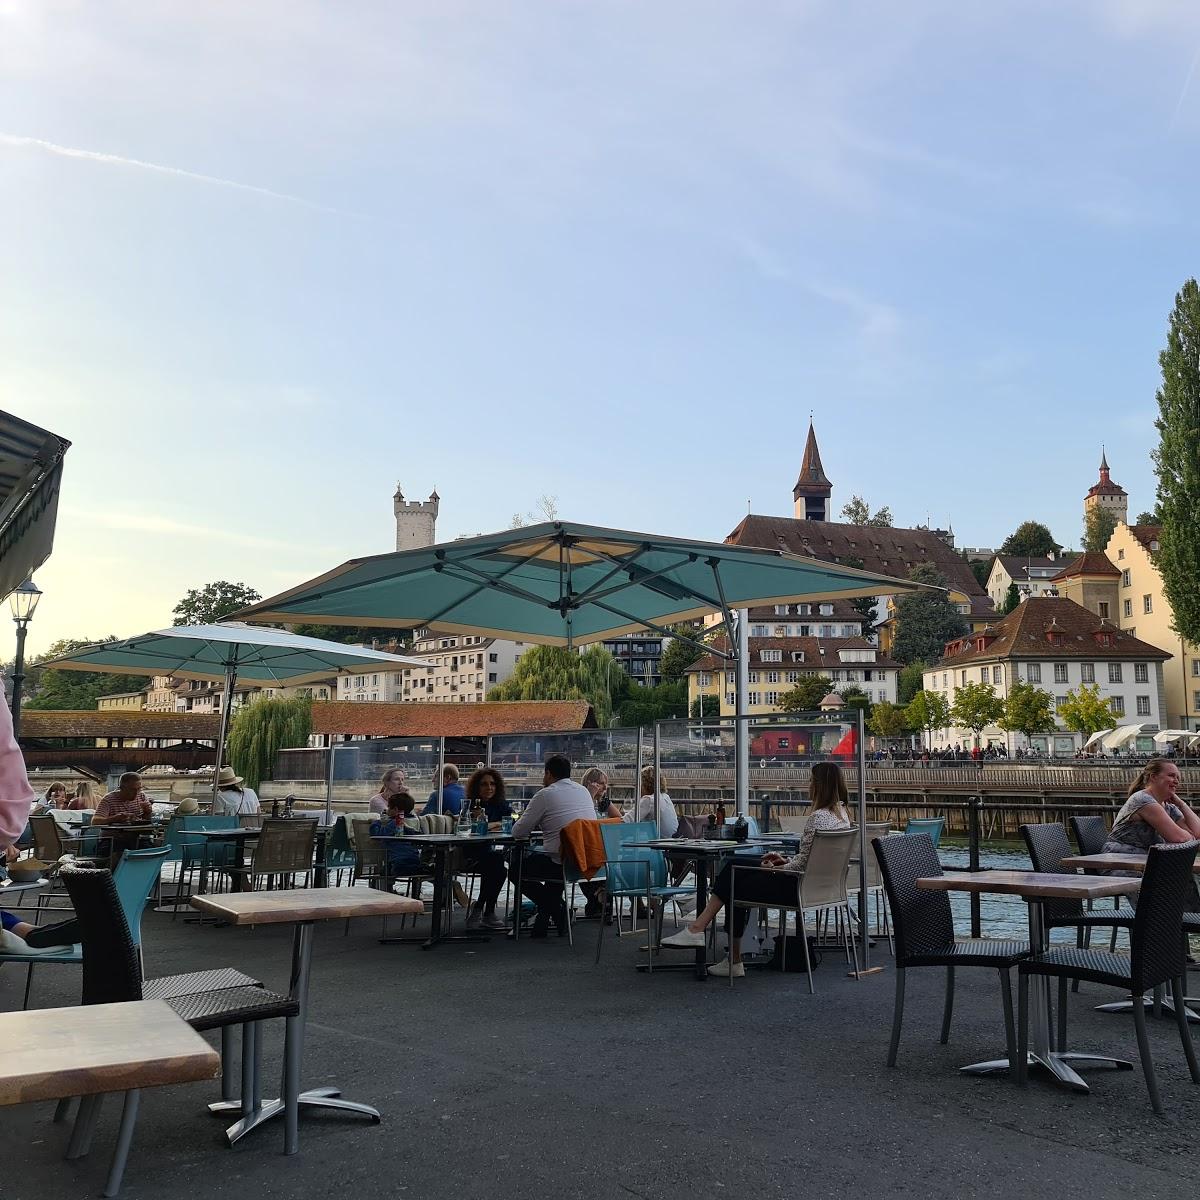 Restaurant "Amore Mio" in Luzern